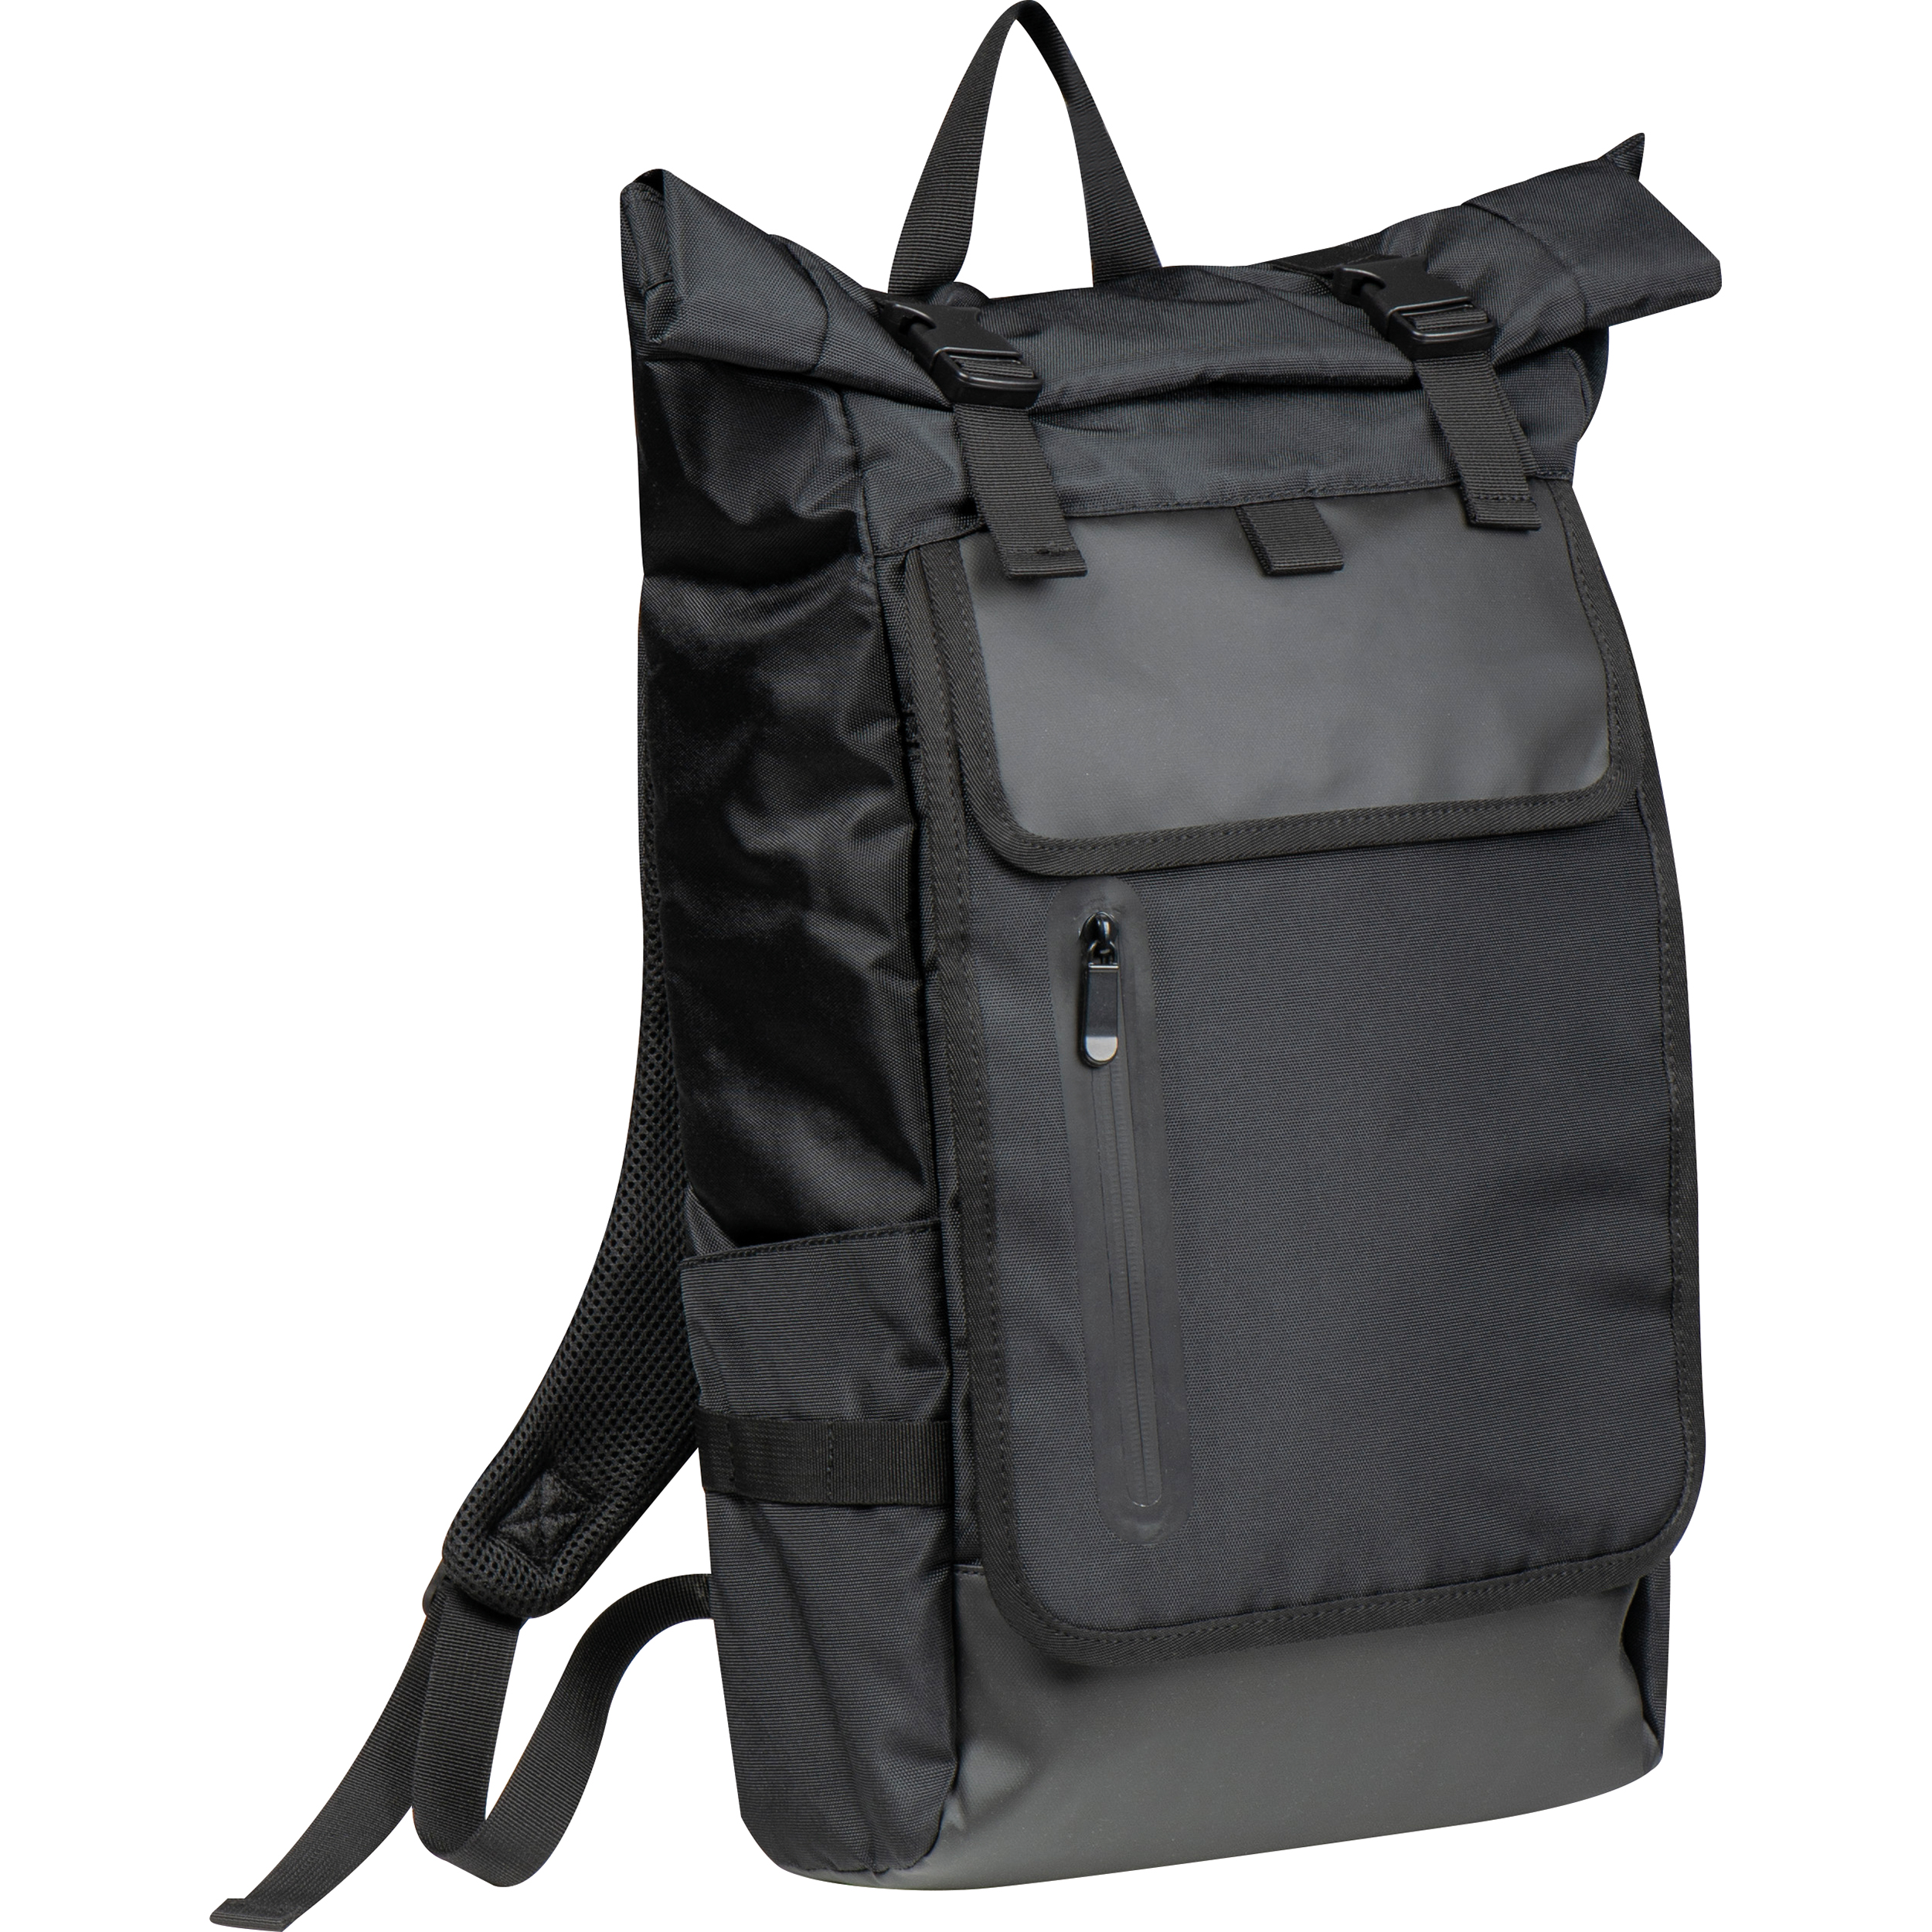 PolyRoll Laptop Backpack - Poppleton - Dufftown